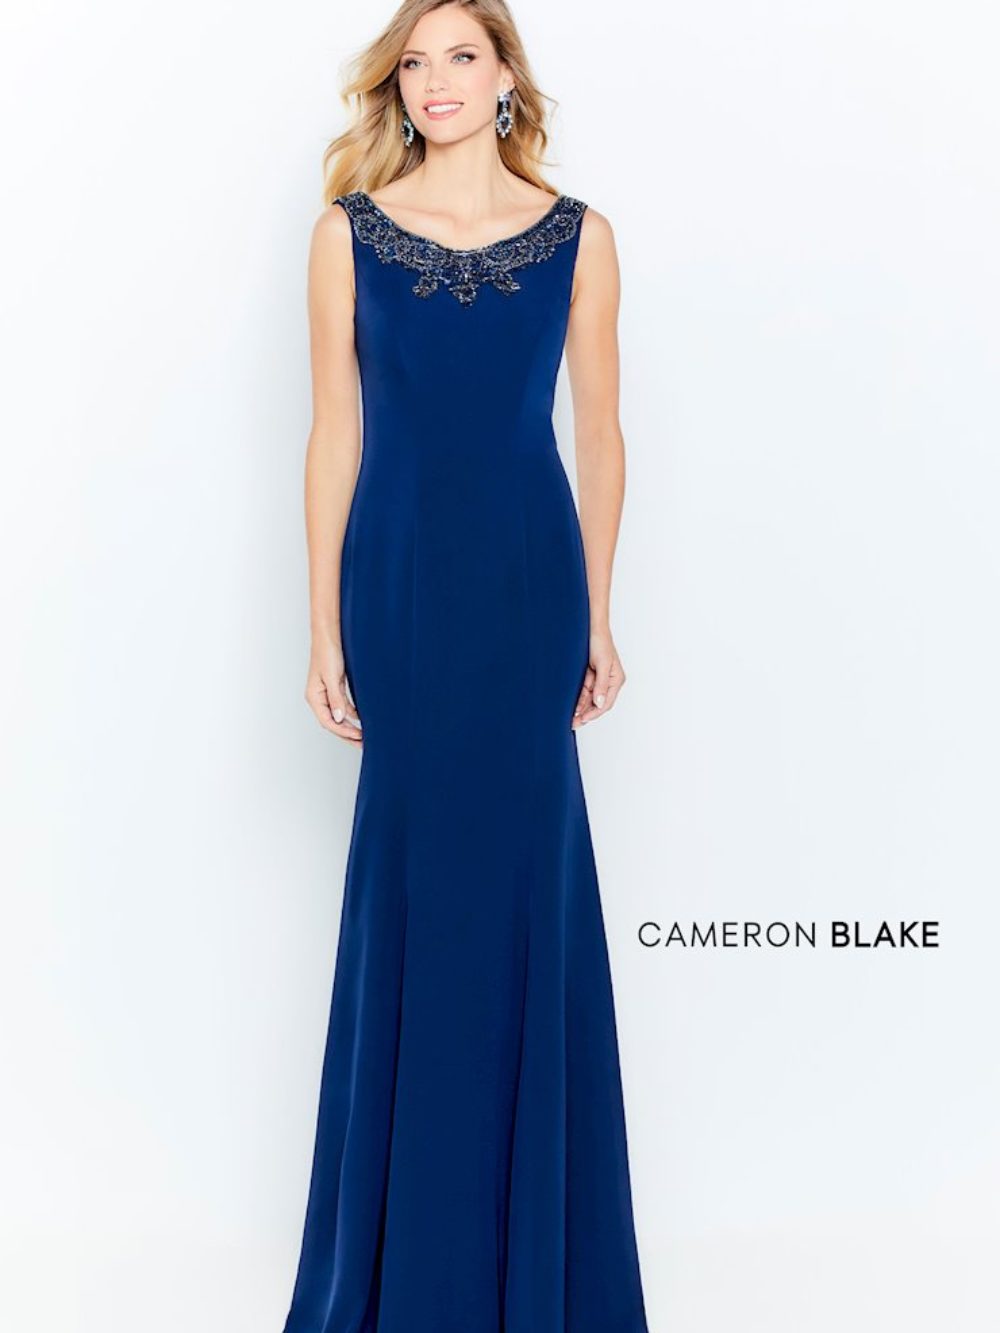 cameron blake dresses where to buy